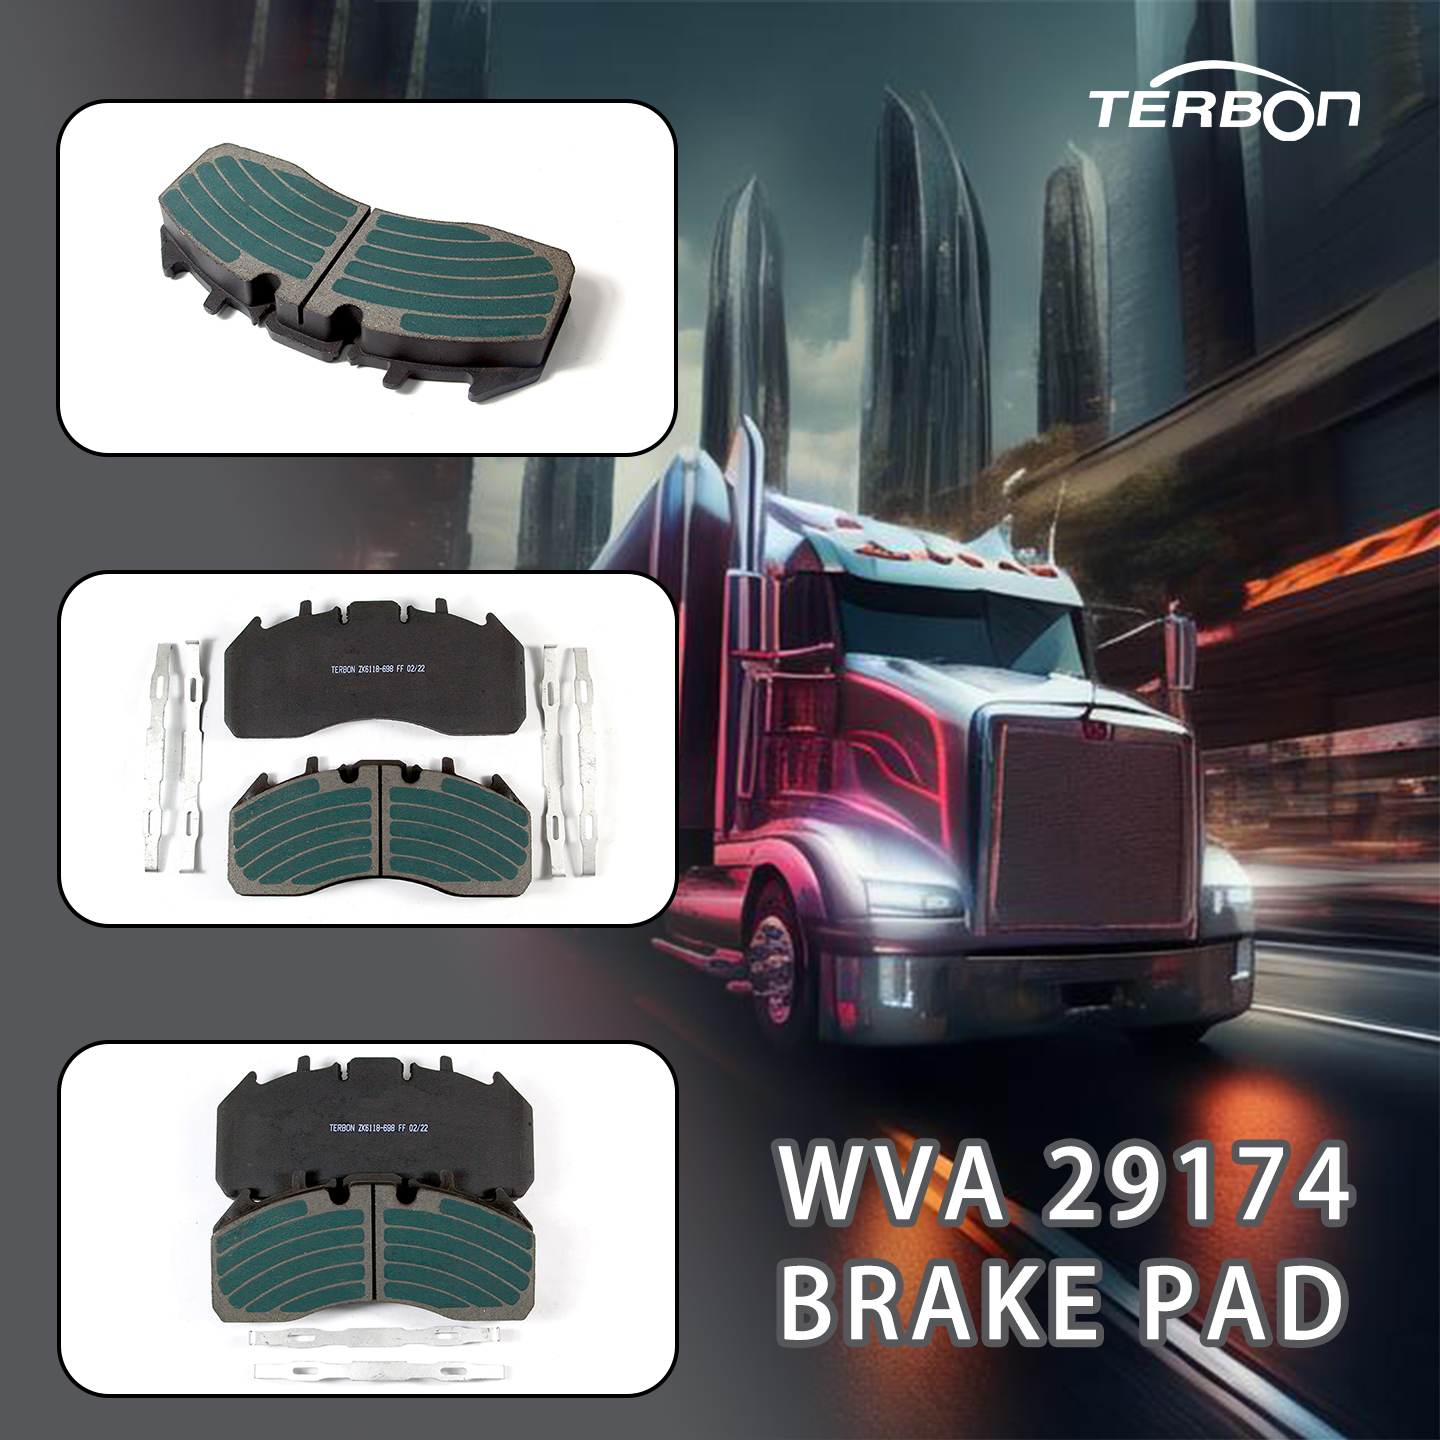 Ra mắt sản phẩm mới: Má phanh WVA 29174 chất lượng cao TERBON dành cho xe tải hạng nặng của bạn